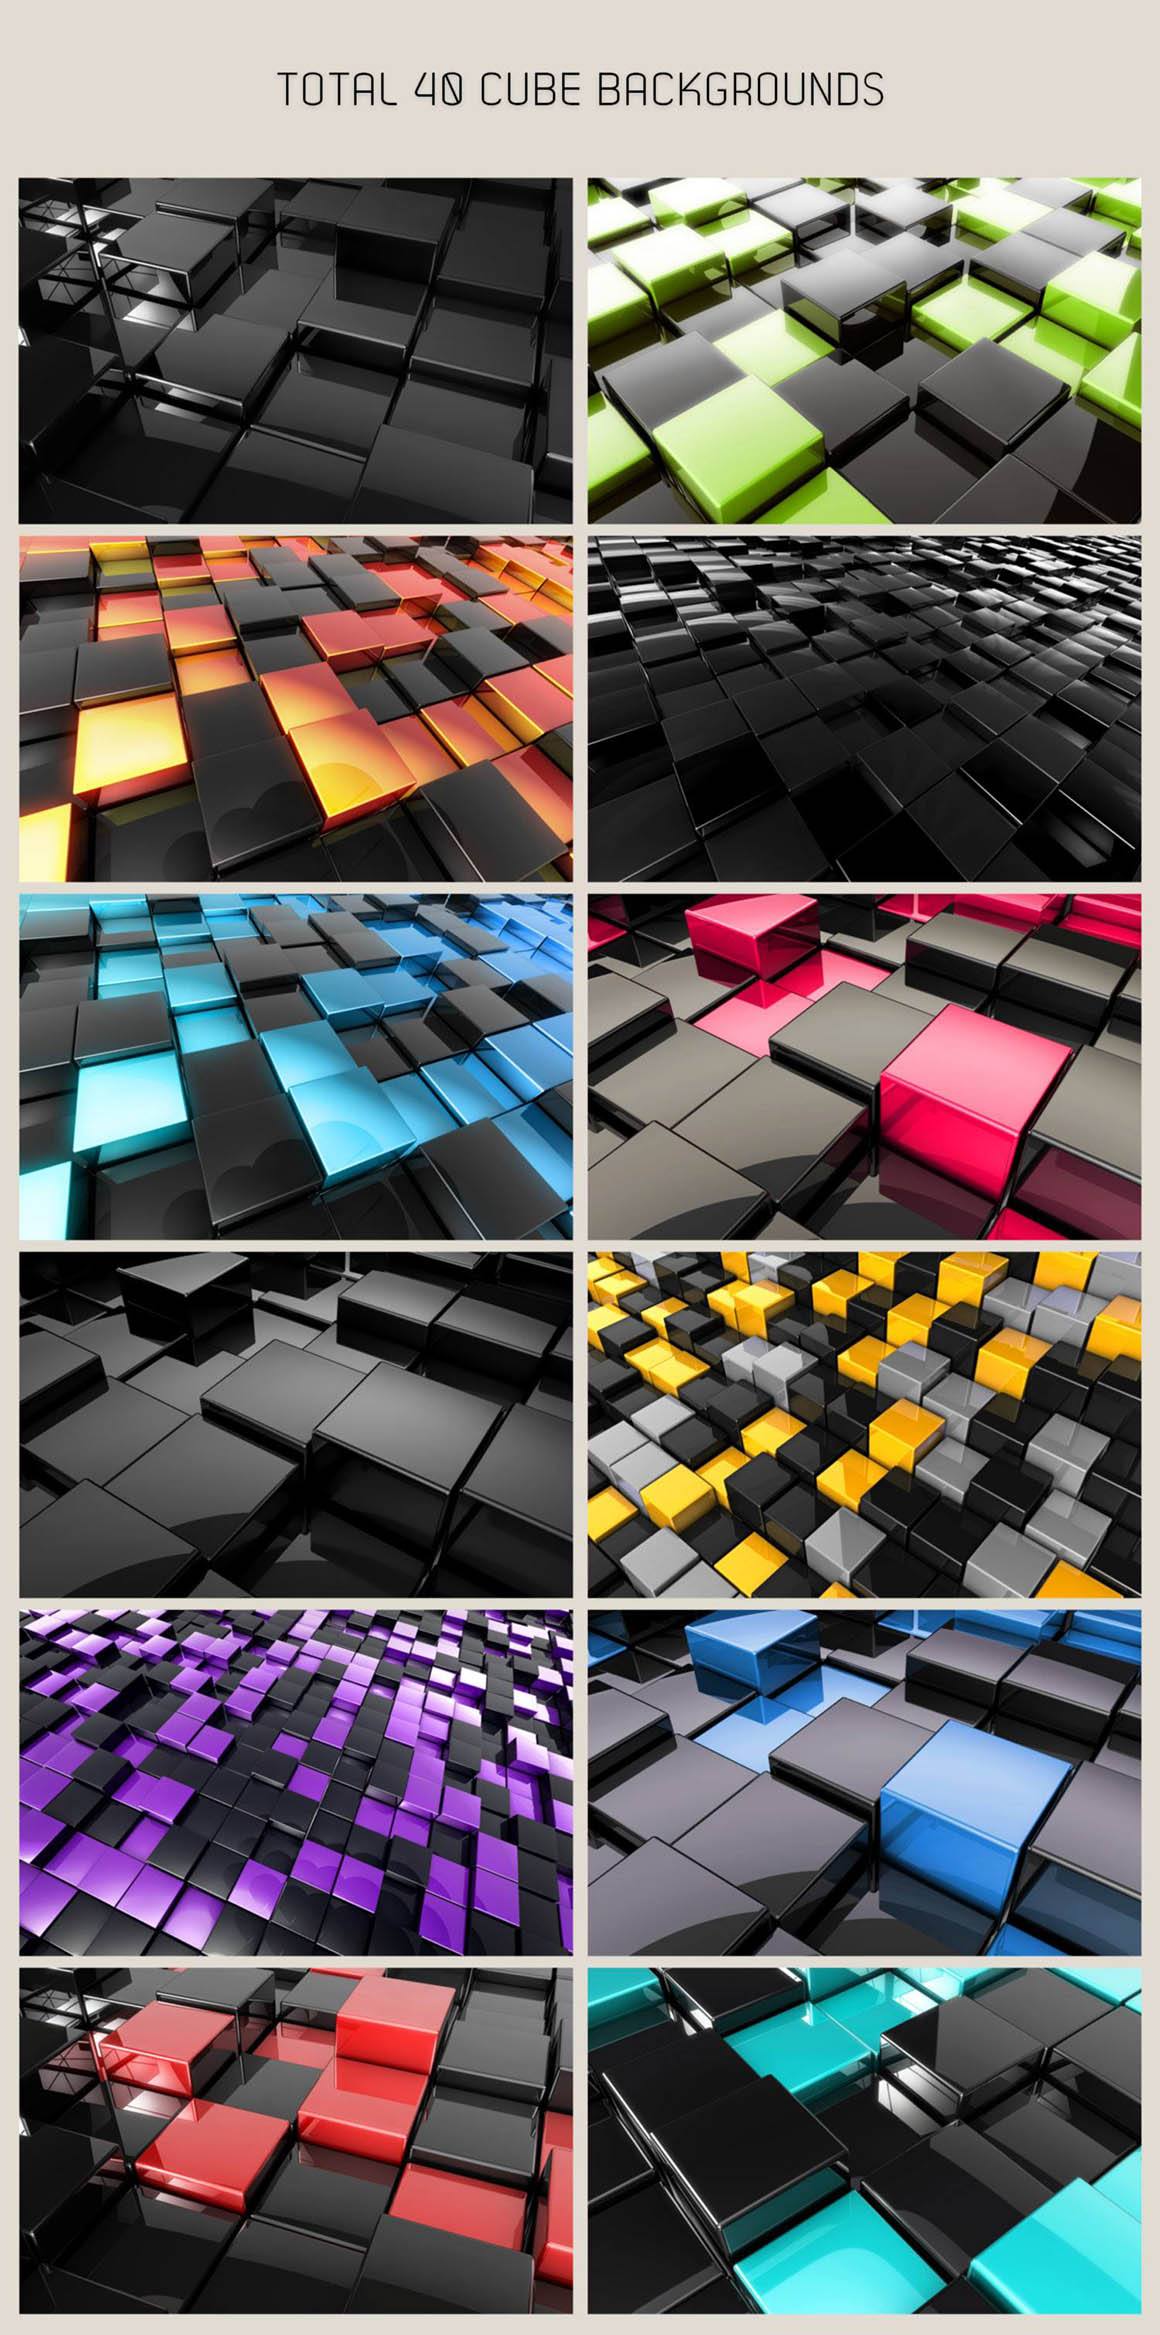 光滑的3D立方体背景图 Free 3D Glossy Cube Backgrounds插图(1)